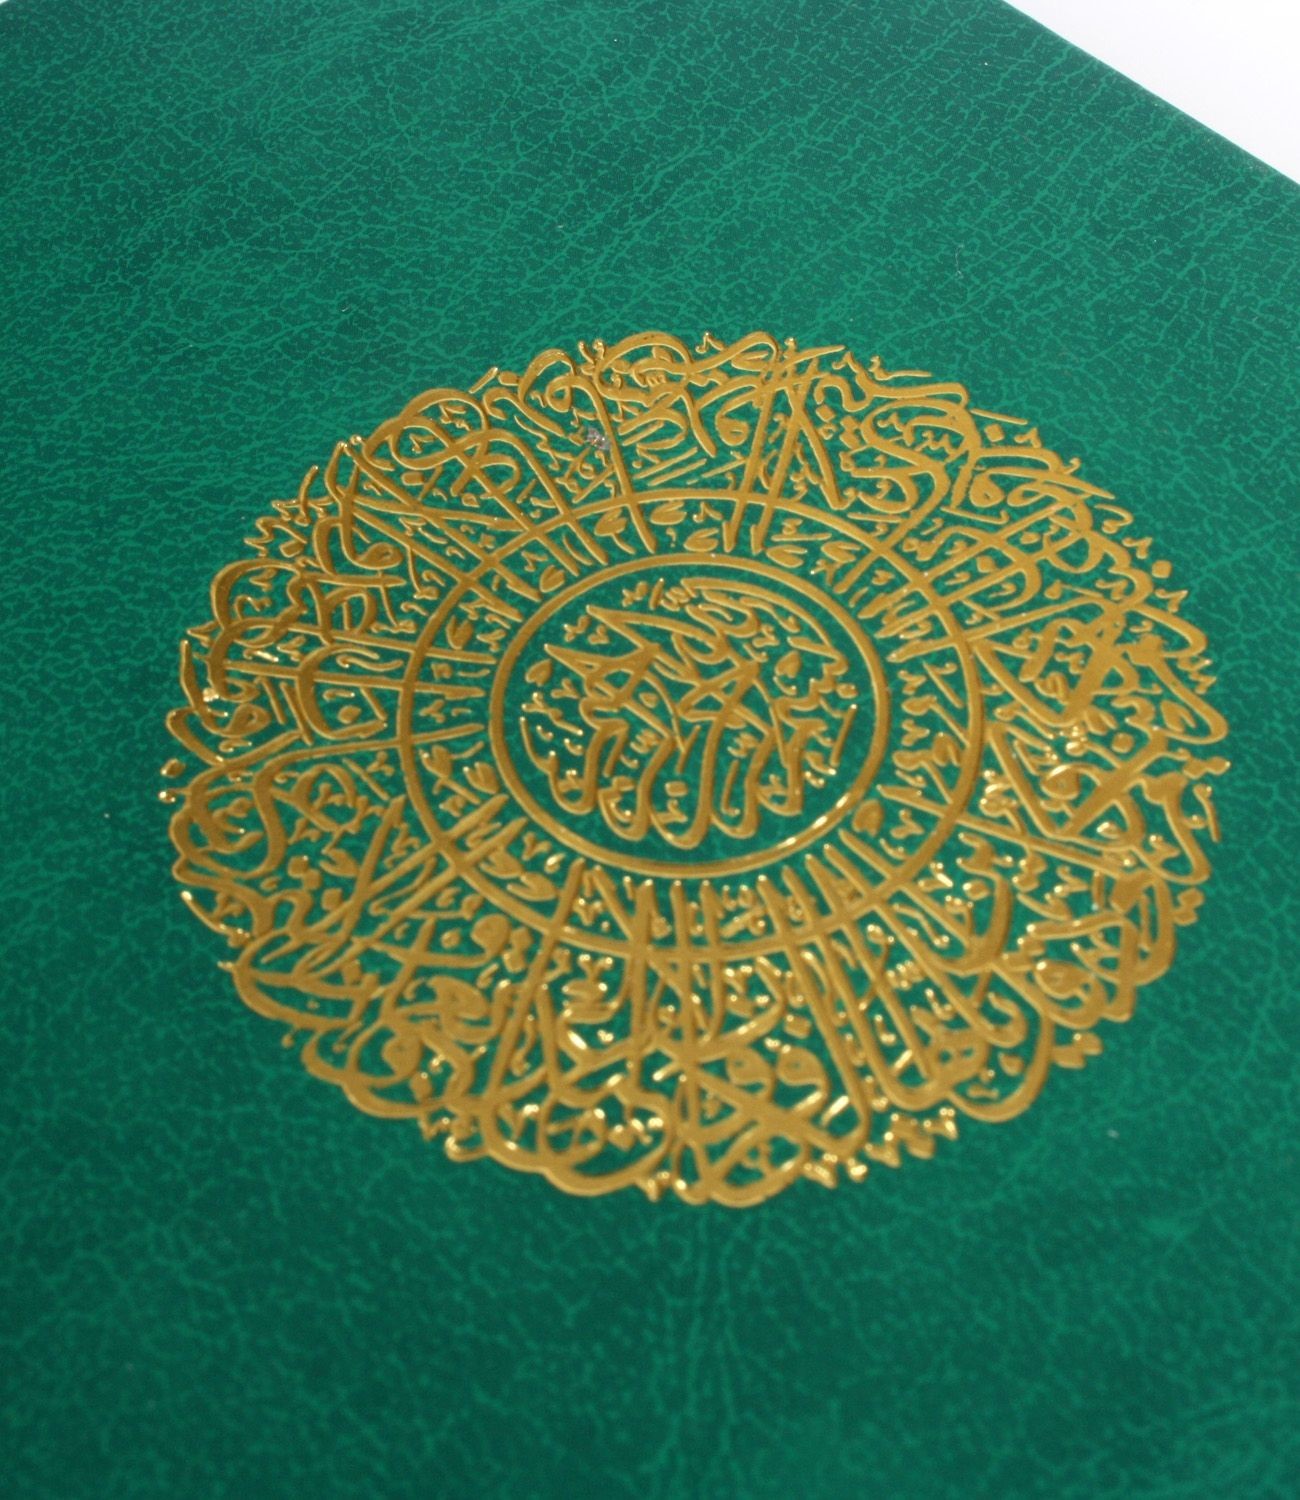  İsim Baskılı   Ciltli Yasin Kitabı   Klasik Desen   Yeşil   Çanta Boy